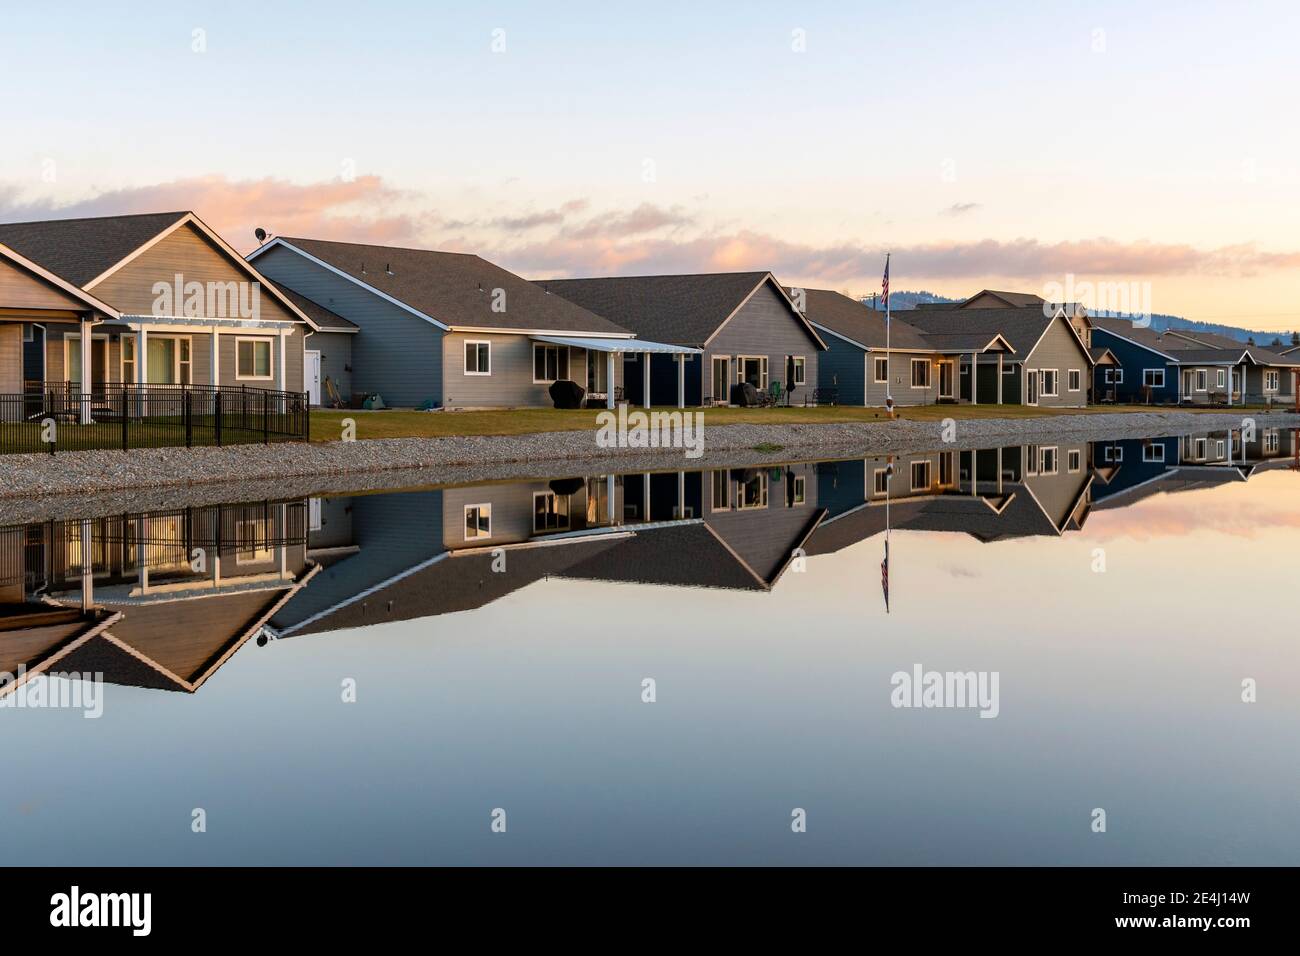 Eine Reihe ähnlicher Häuser in einer Unterteilung am Wasser spiegeln sich entlang eines glatten Sees. Stockfoto